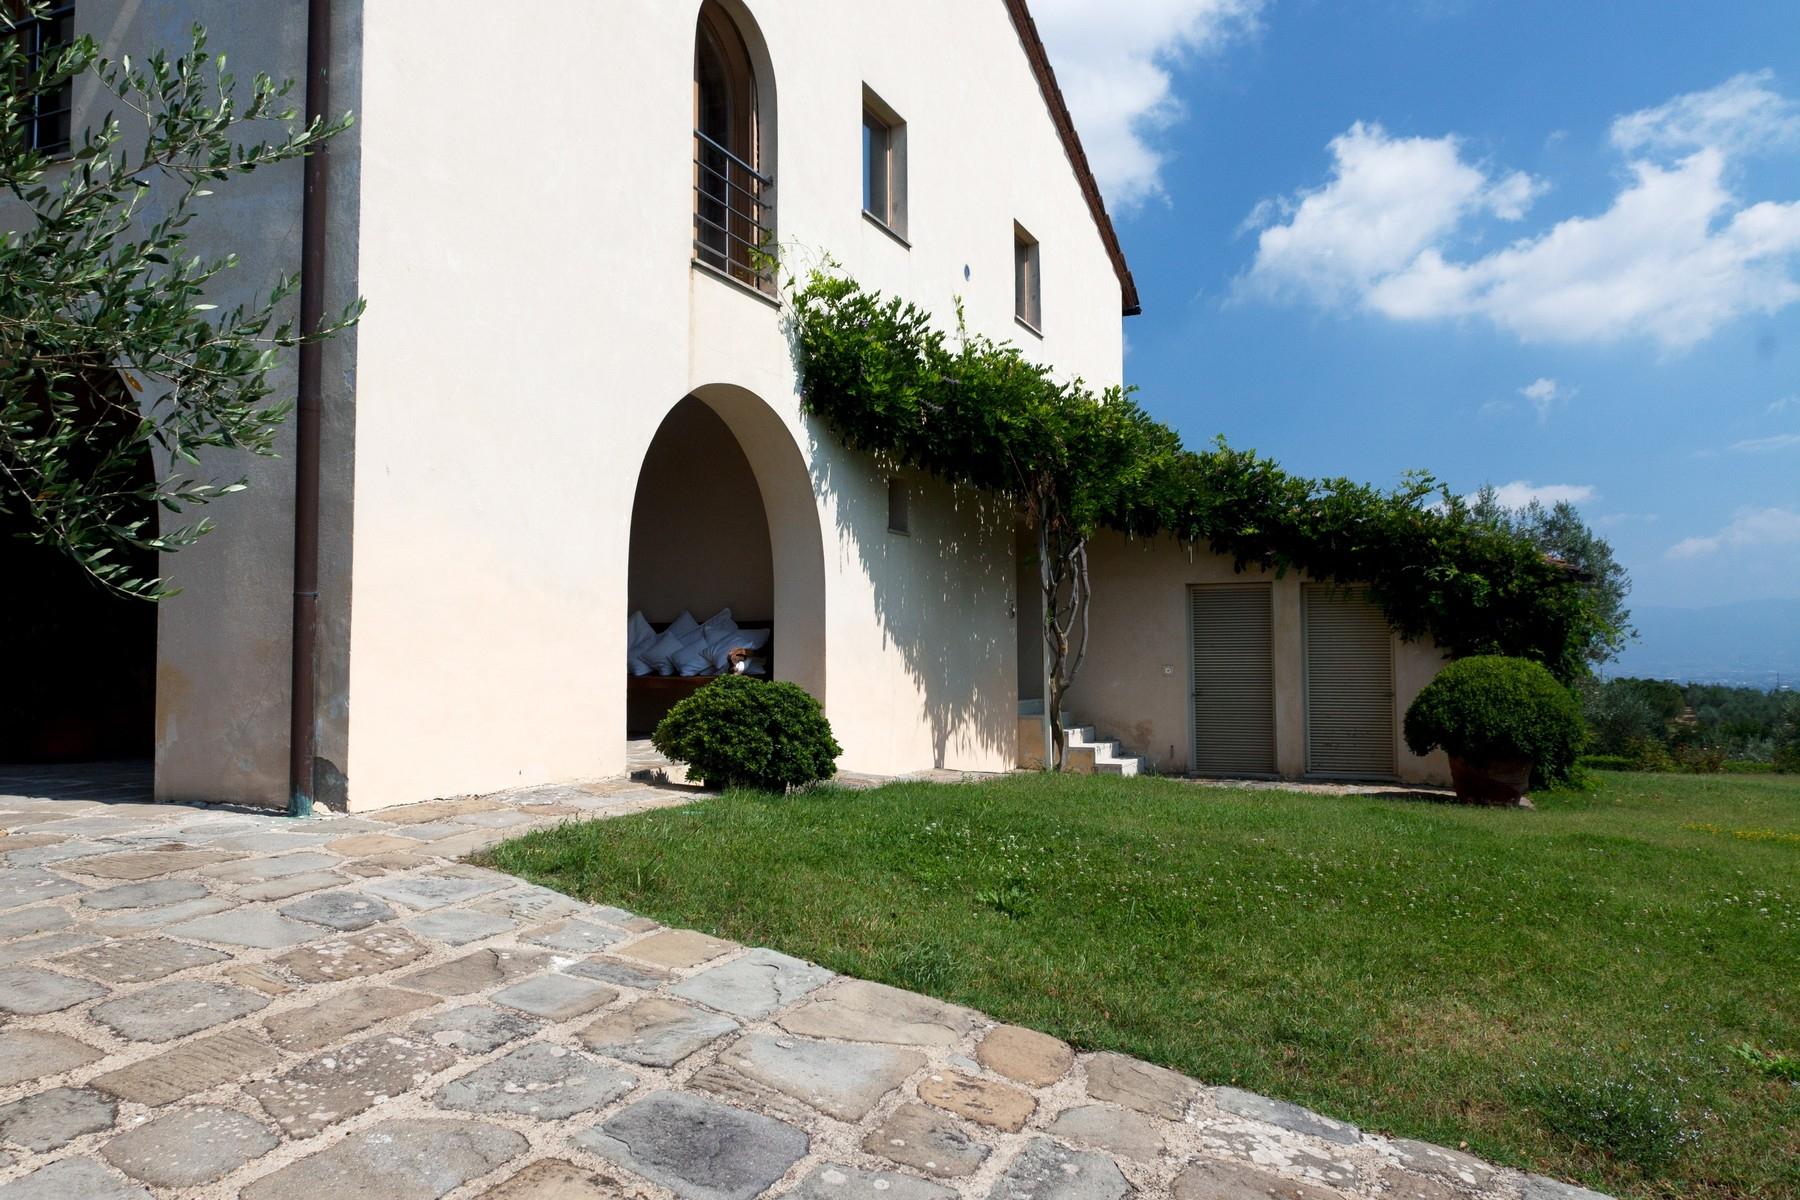 Design-Villa in der Nähe von Florenz - 10